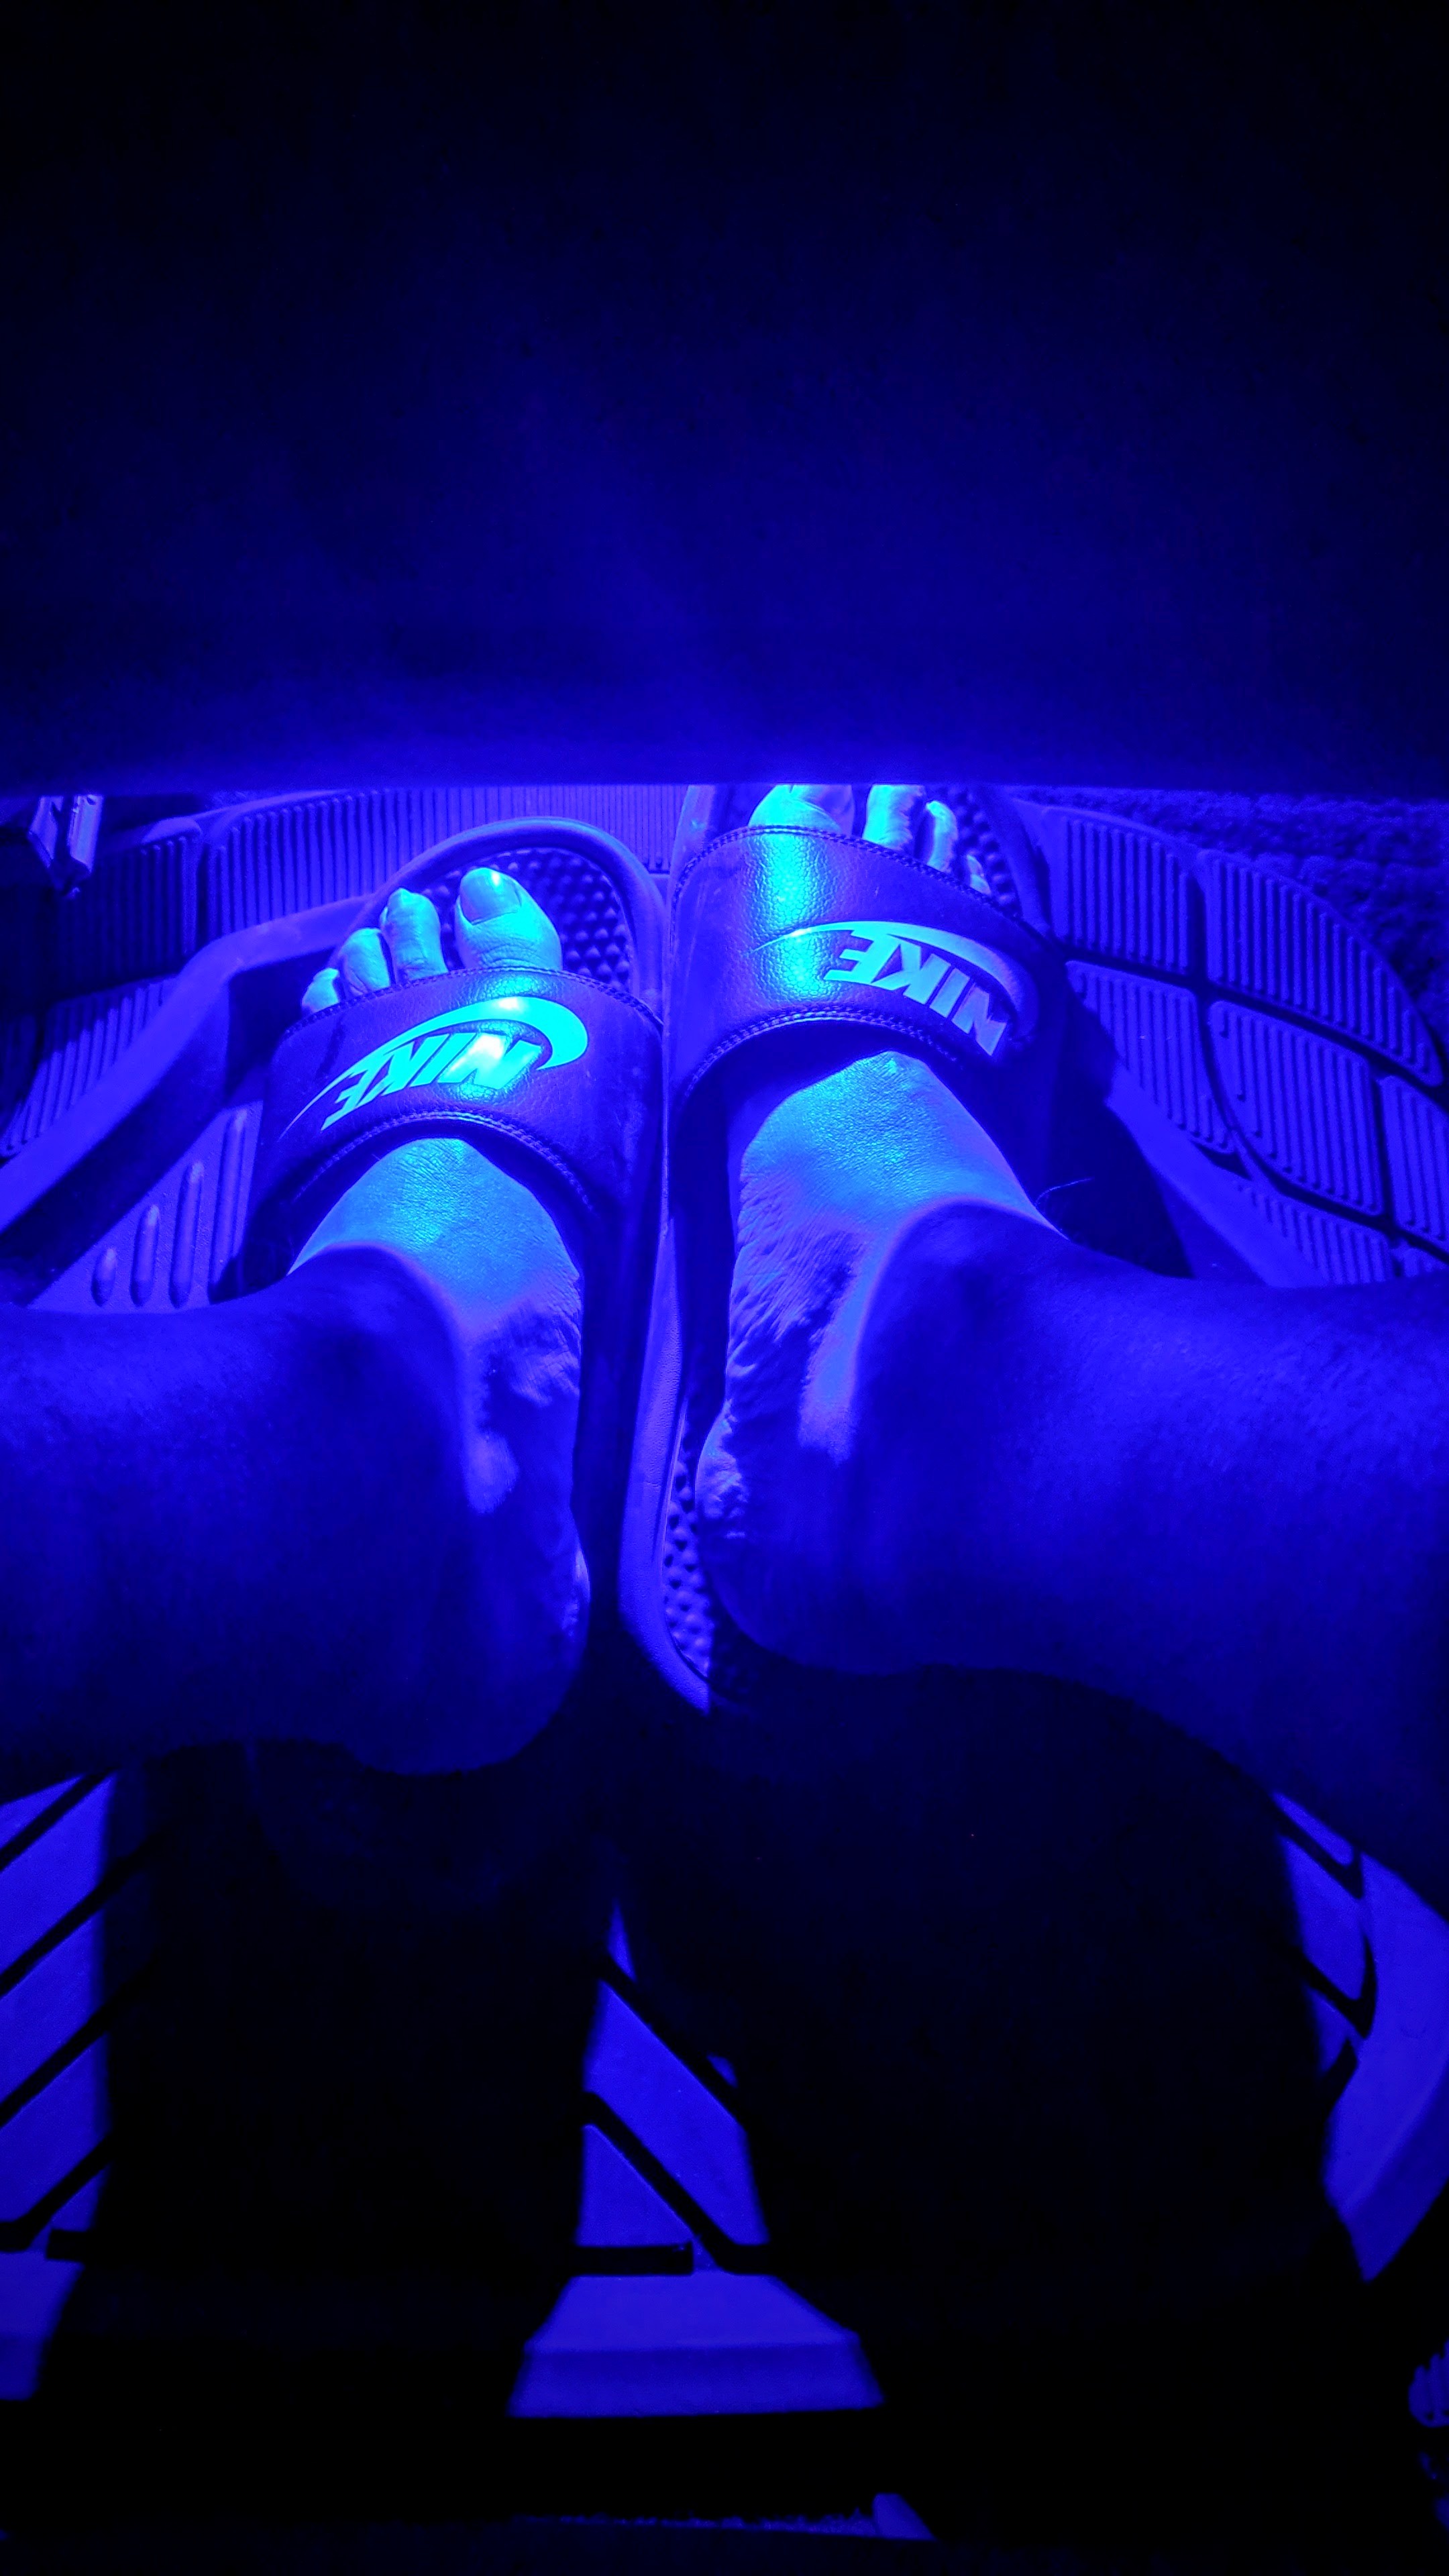 Feet under a blue lit seat